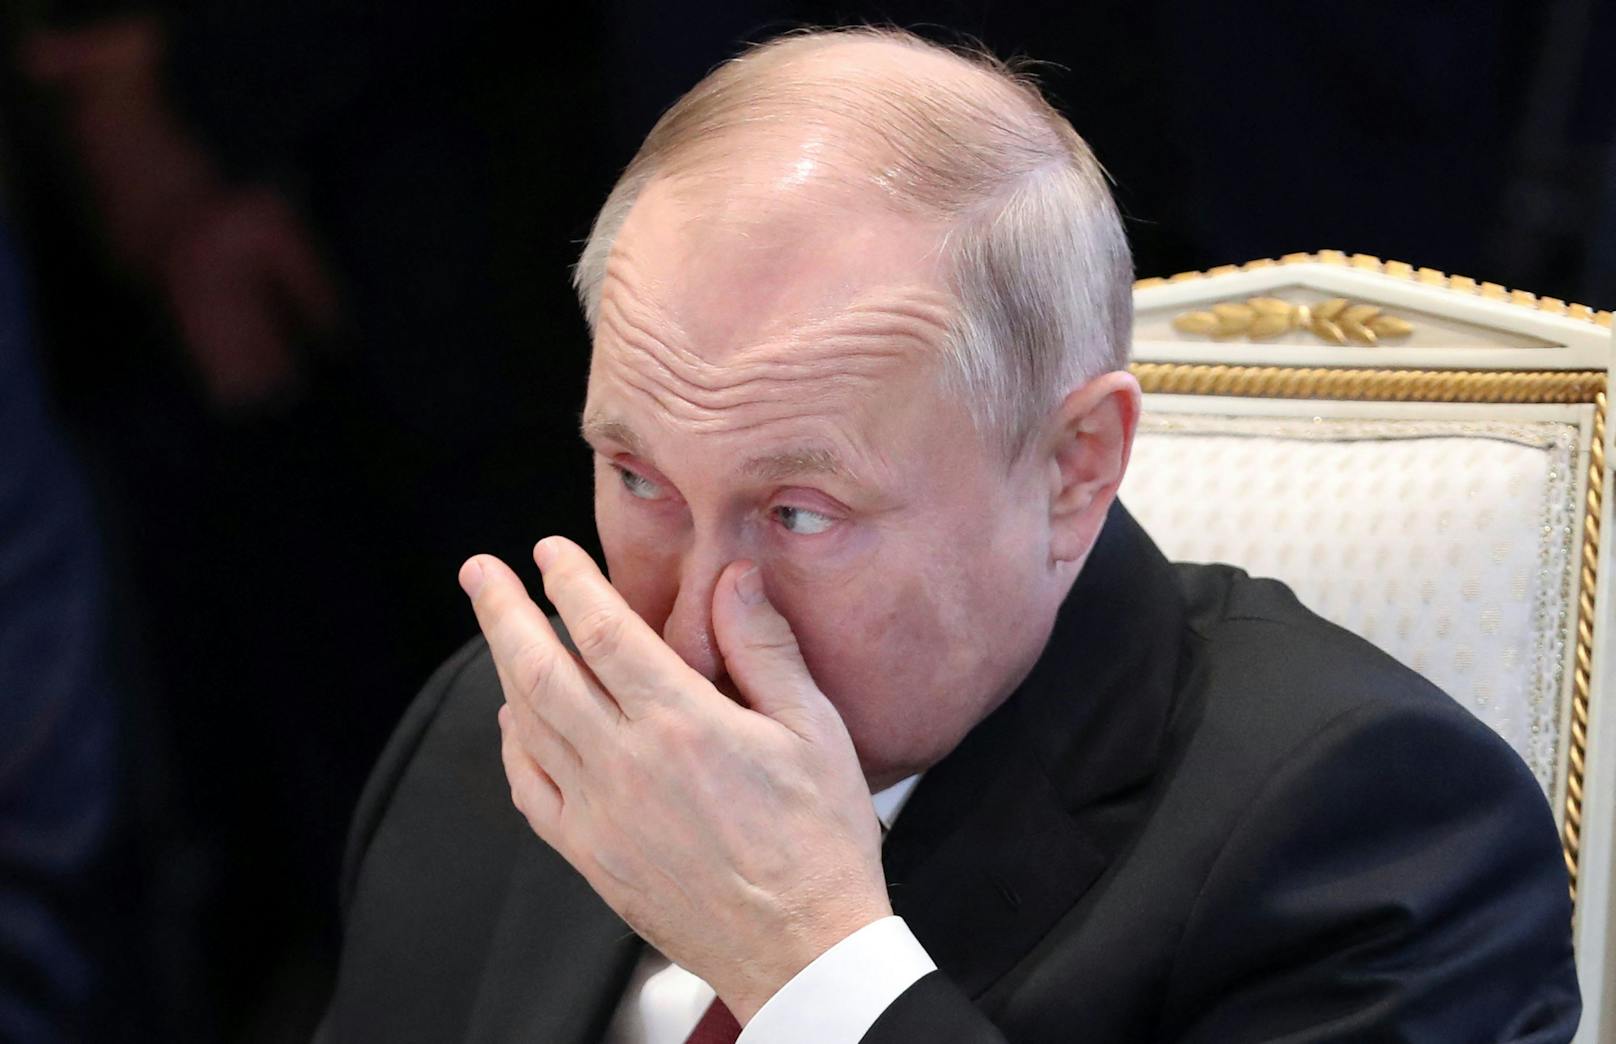 Der russische Präsident <a data-li-document-ref="100237825" href="https://www.heute.at/g/kreml-chef-wladimir-putin-reist-nicht-zu-g20-gipfel-100237825">Wladimir Putin</a> ist bei einem wichtigen Gipfeltreffen der OVKS vor aller Augen blamiert worden.